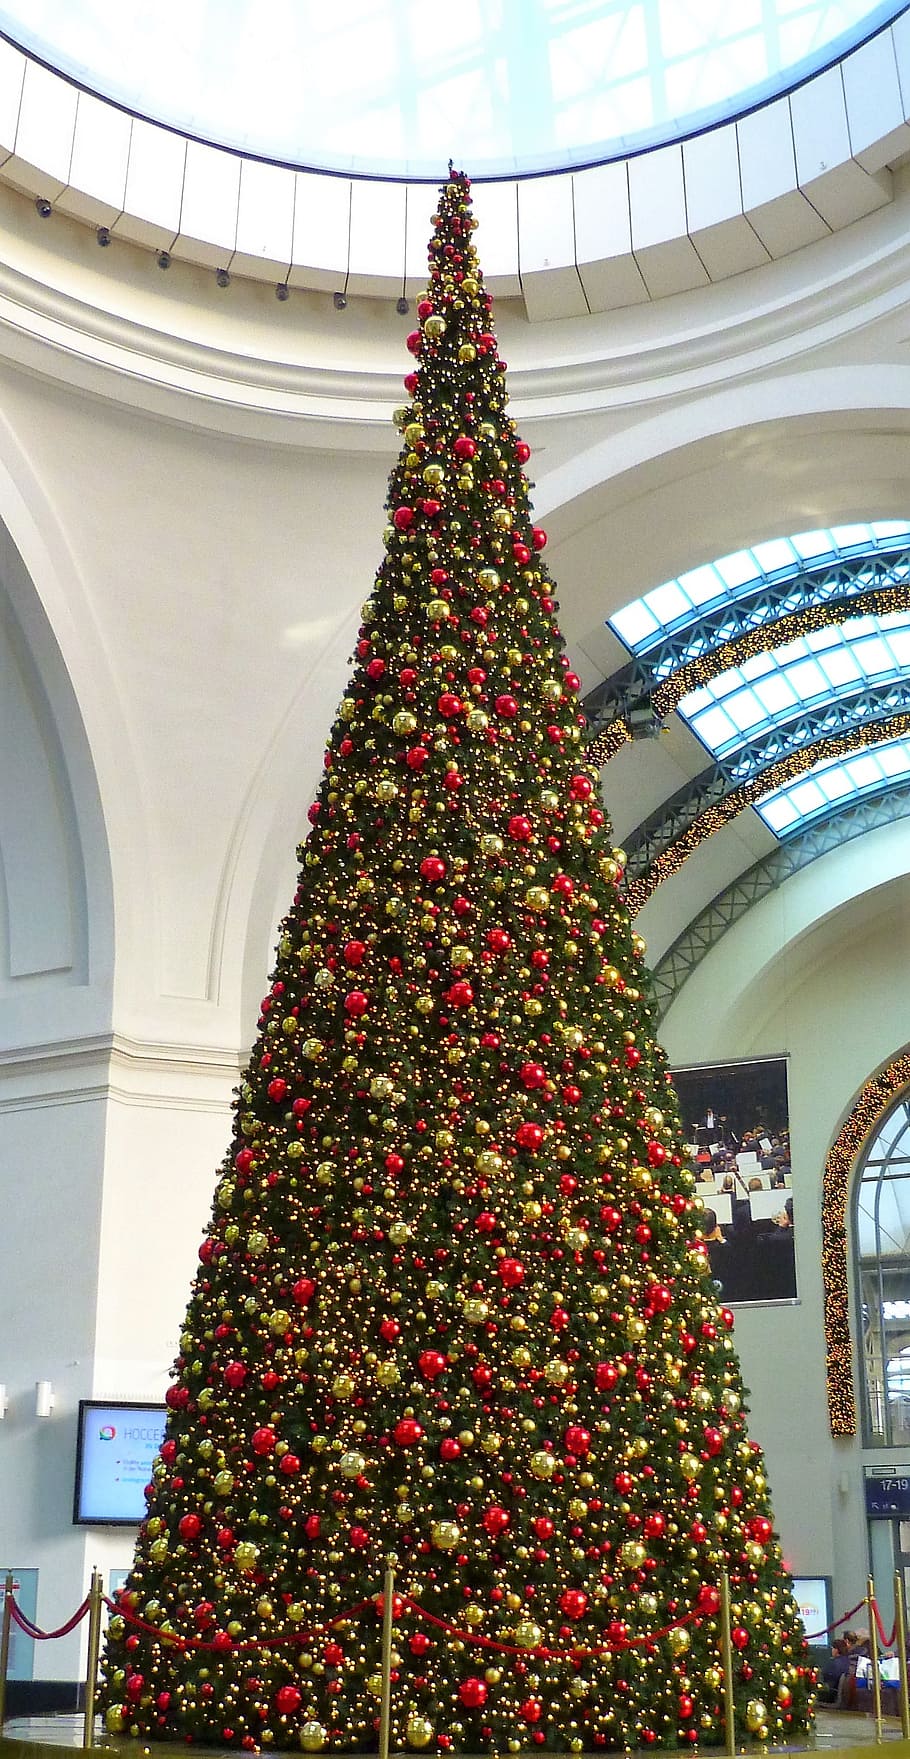 árbol de navidad, dentro, edificio, navidad, weihnachtsbaumschmuck, glaskugeln, árbol, festivo, decoración navideña, adornos navideños